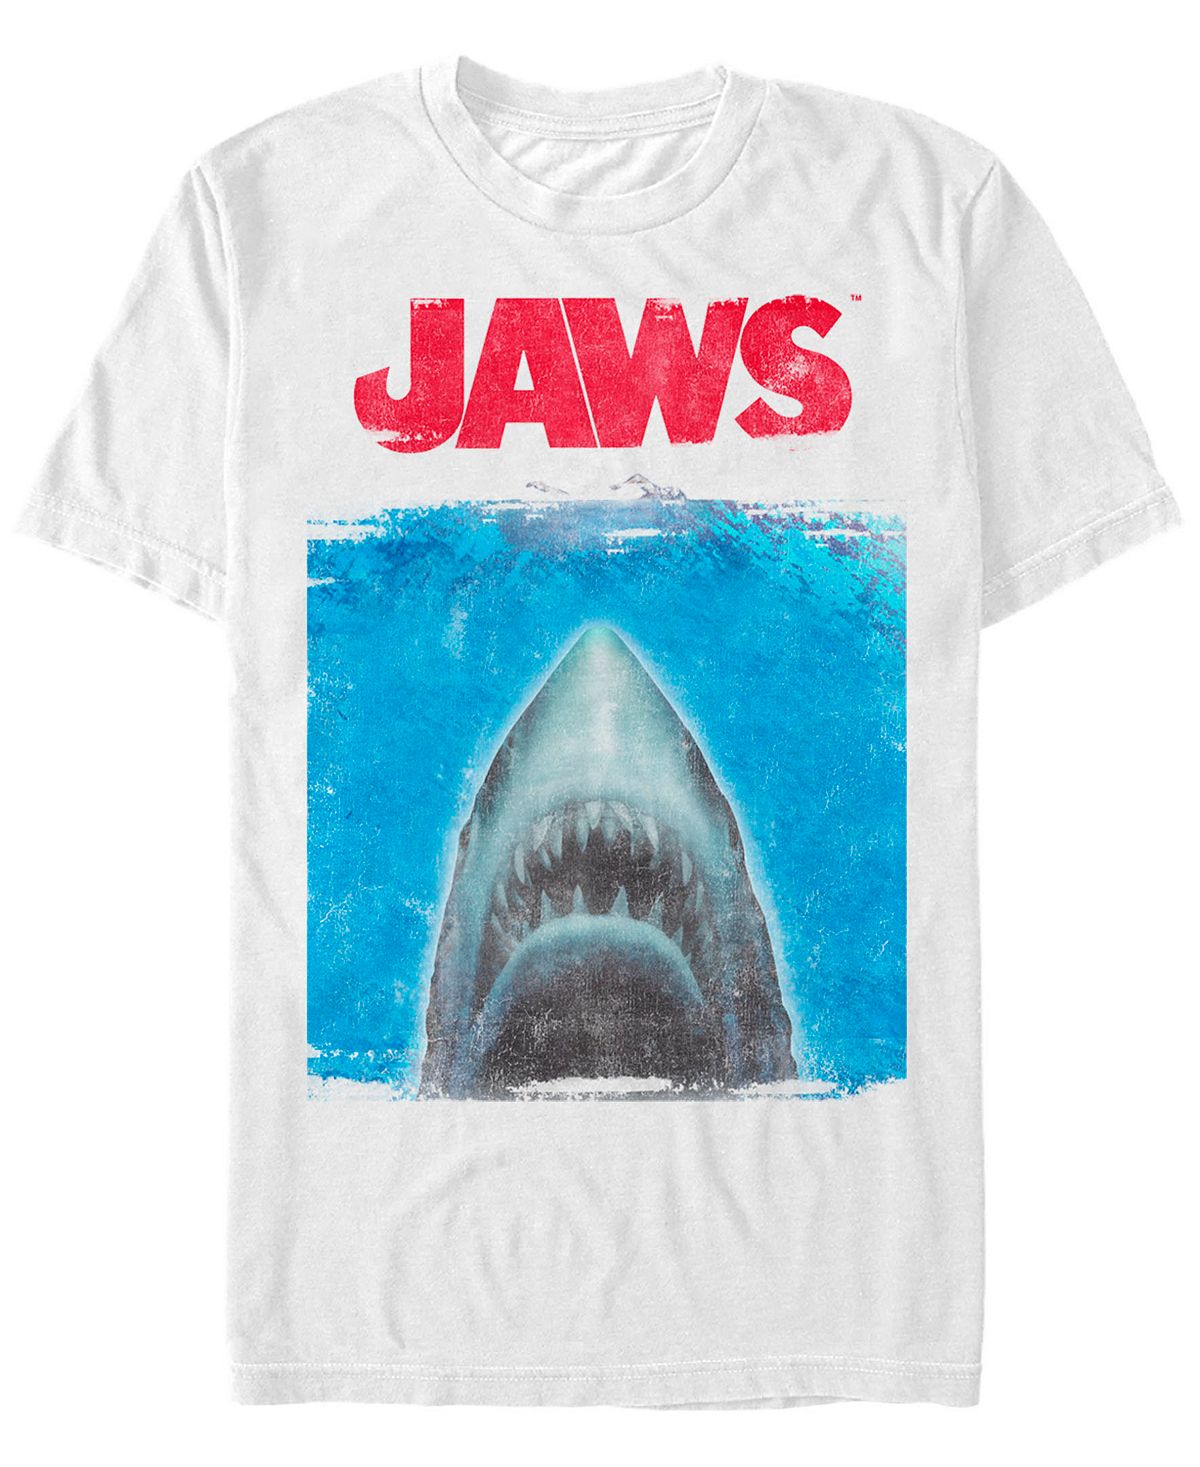 Мужская футболка с короткими рукавами с изображением акулы «челюсти» Fifth Sun, белый